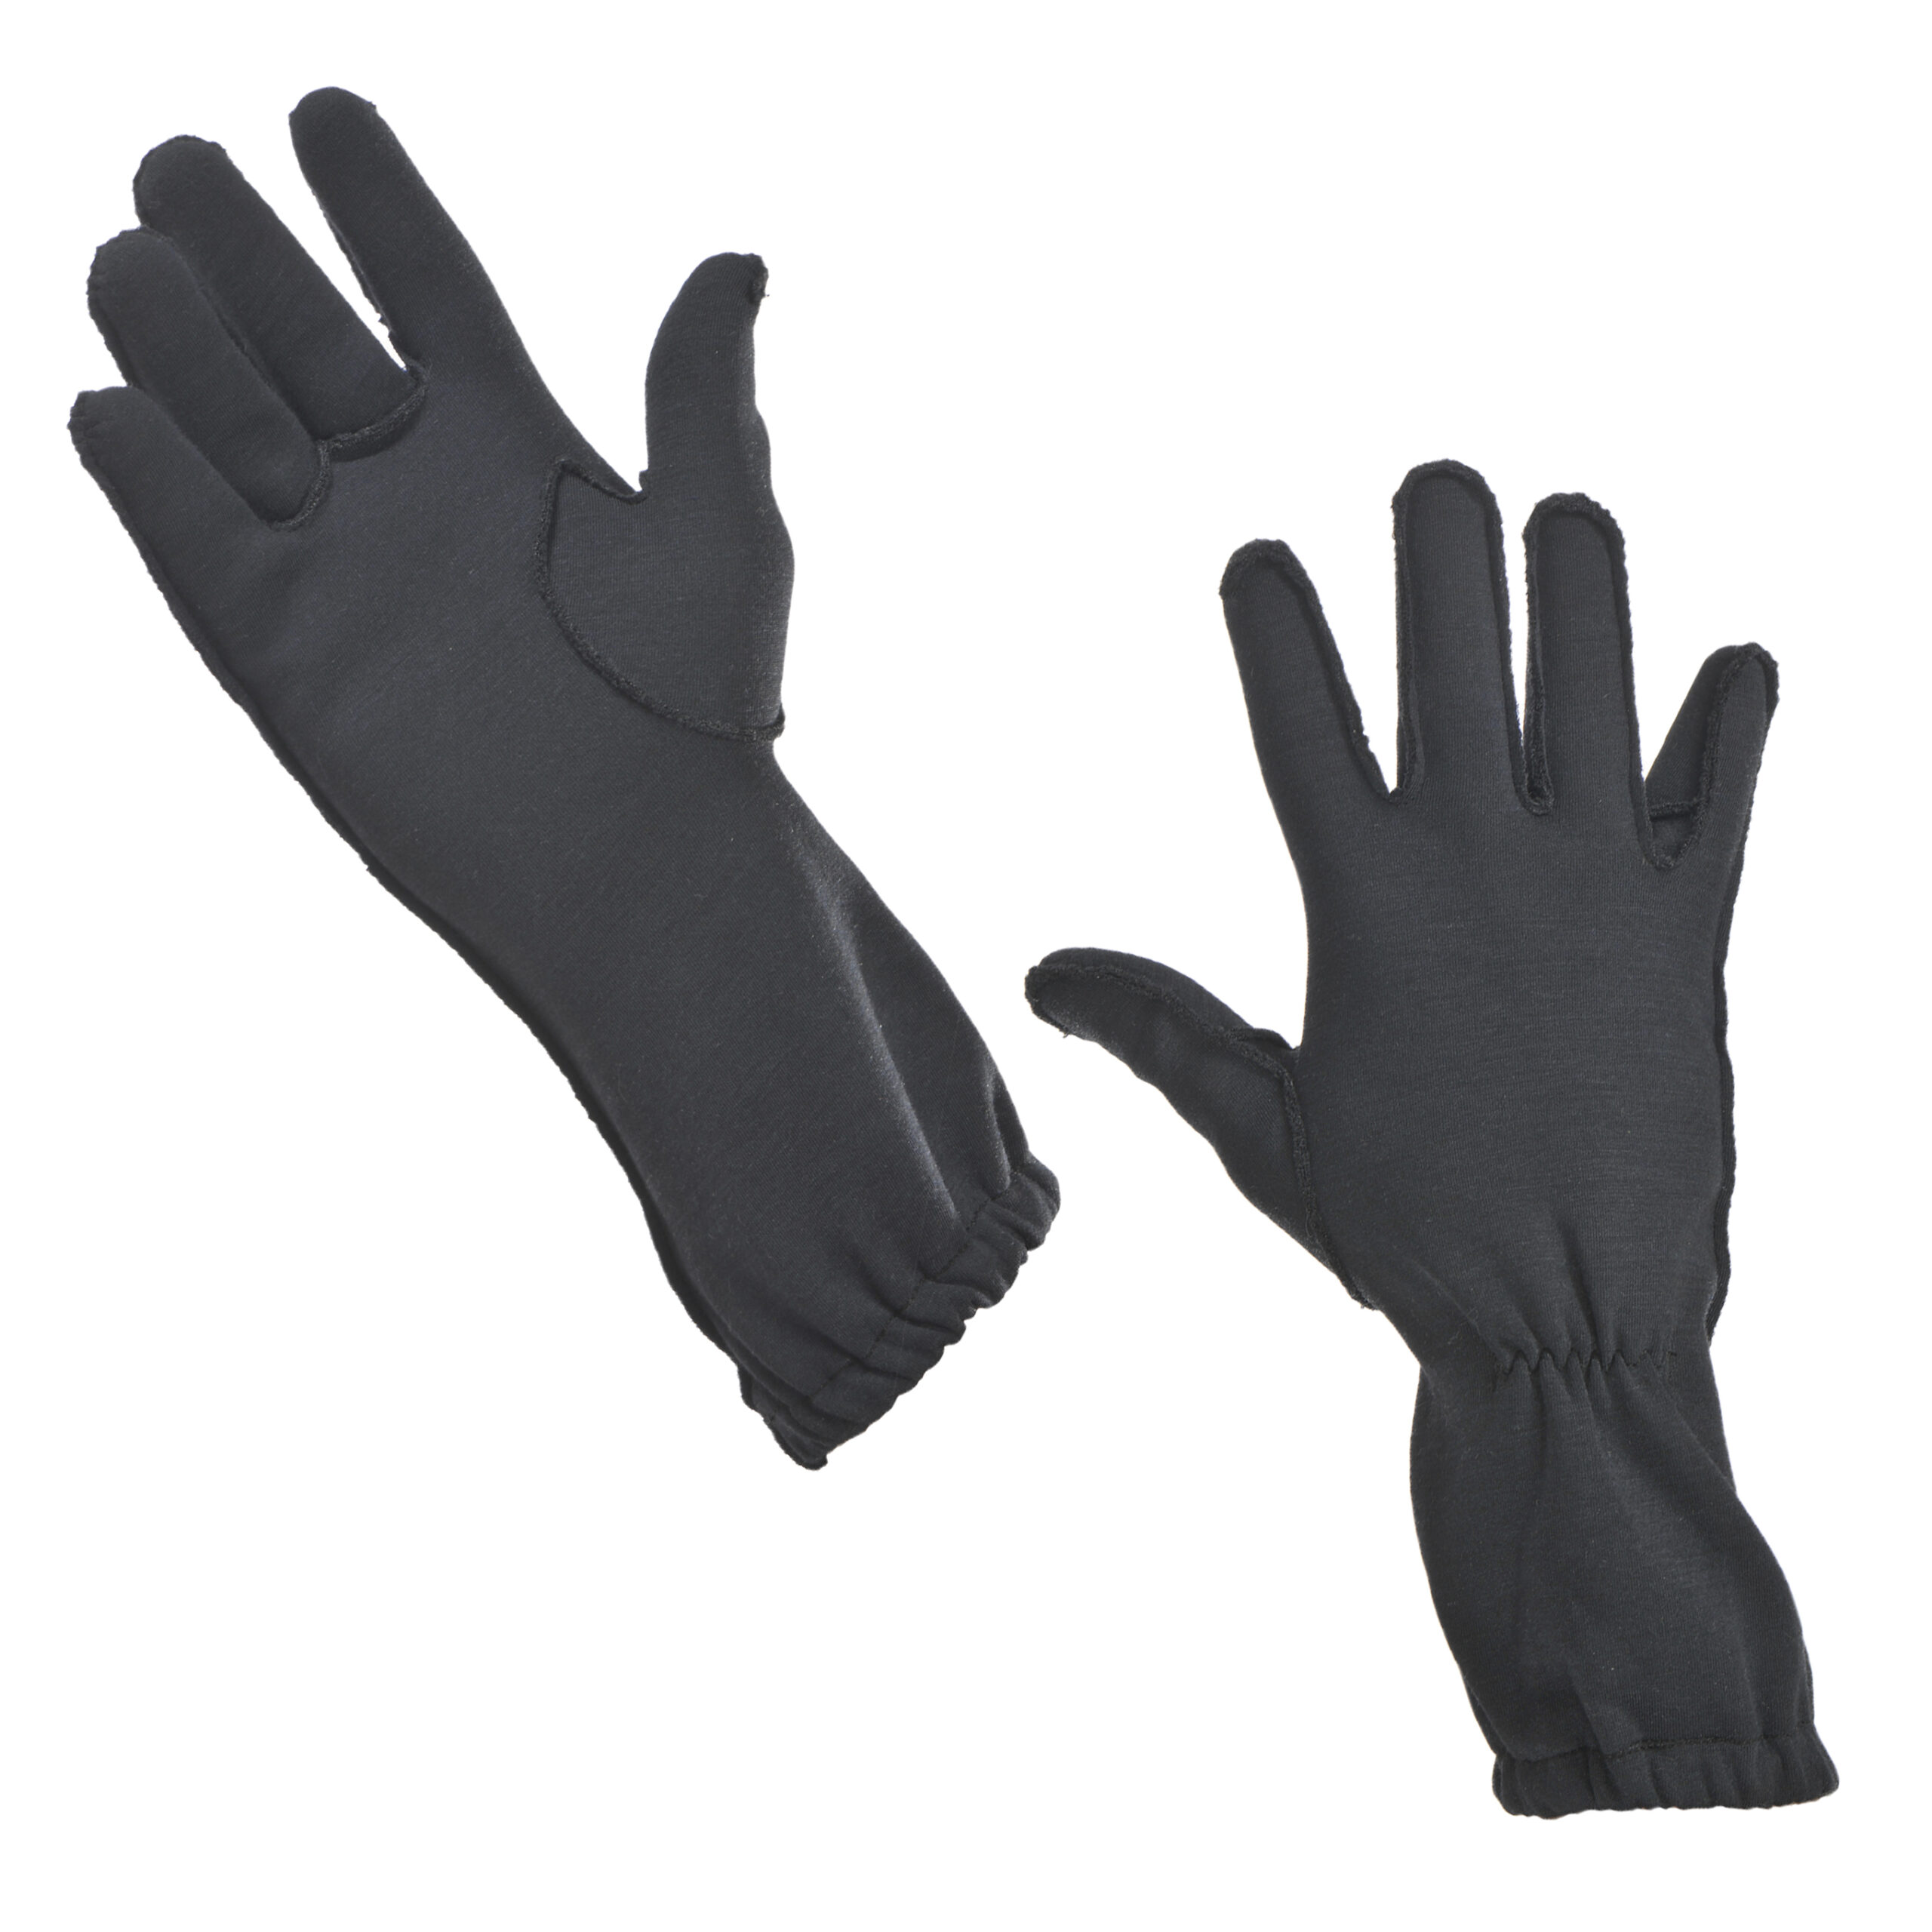 Second skin® : Sous gants NRBC – Ouvry – Systèmes de protection NRBC